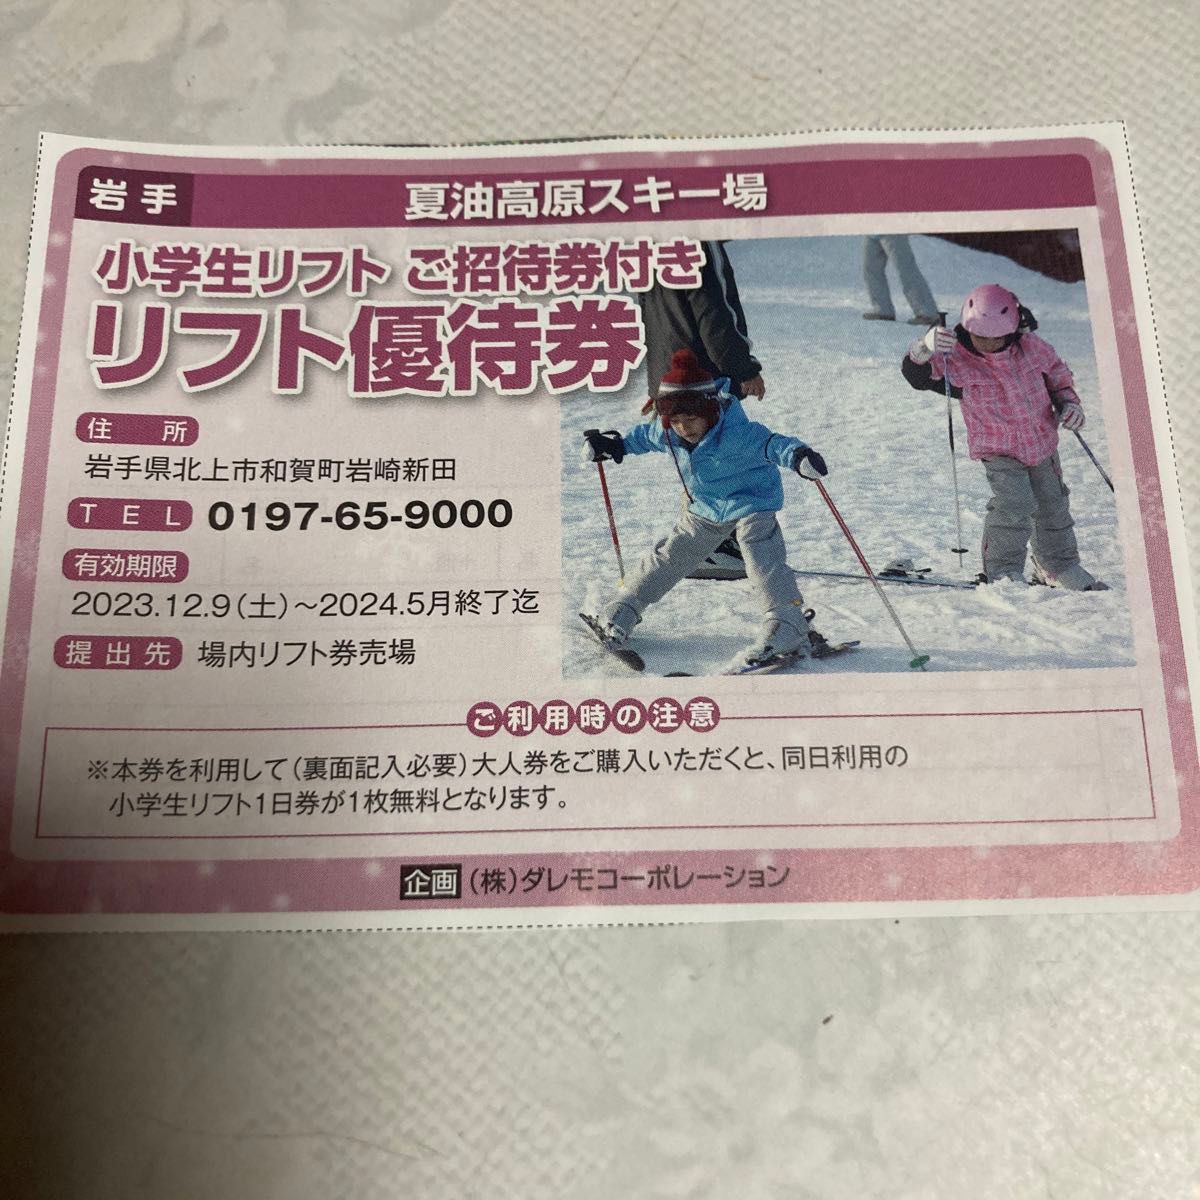 さかえ倶楽部スキー場 リフト50OFF券 1枚 - スキー場